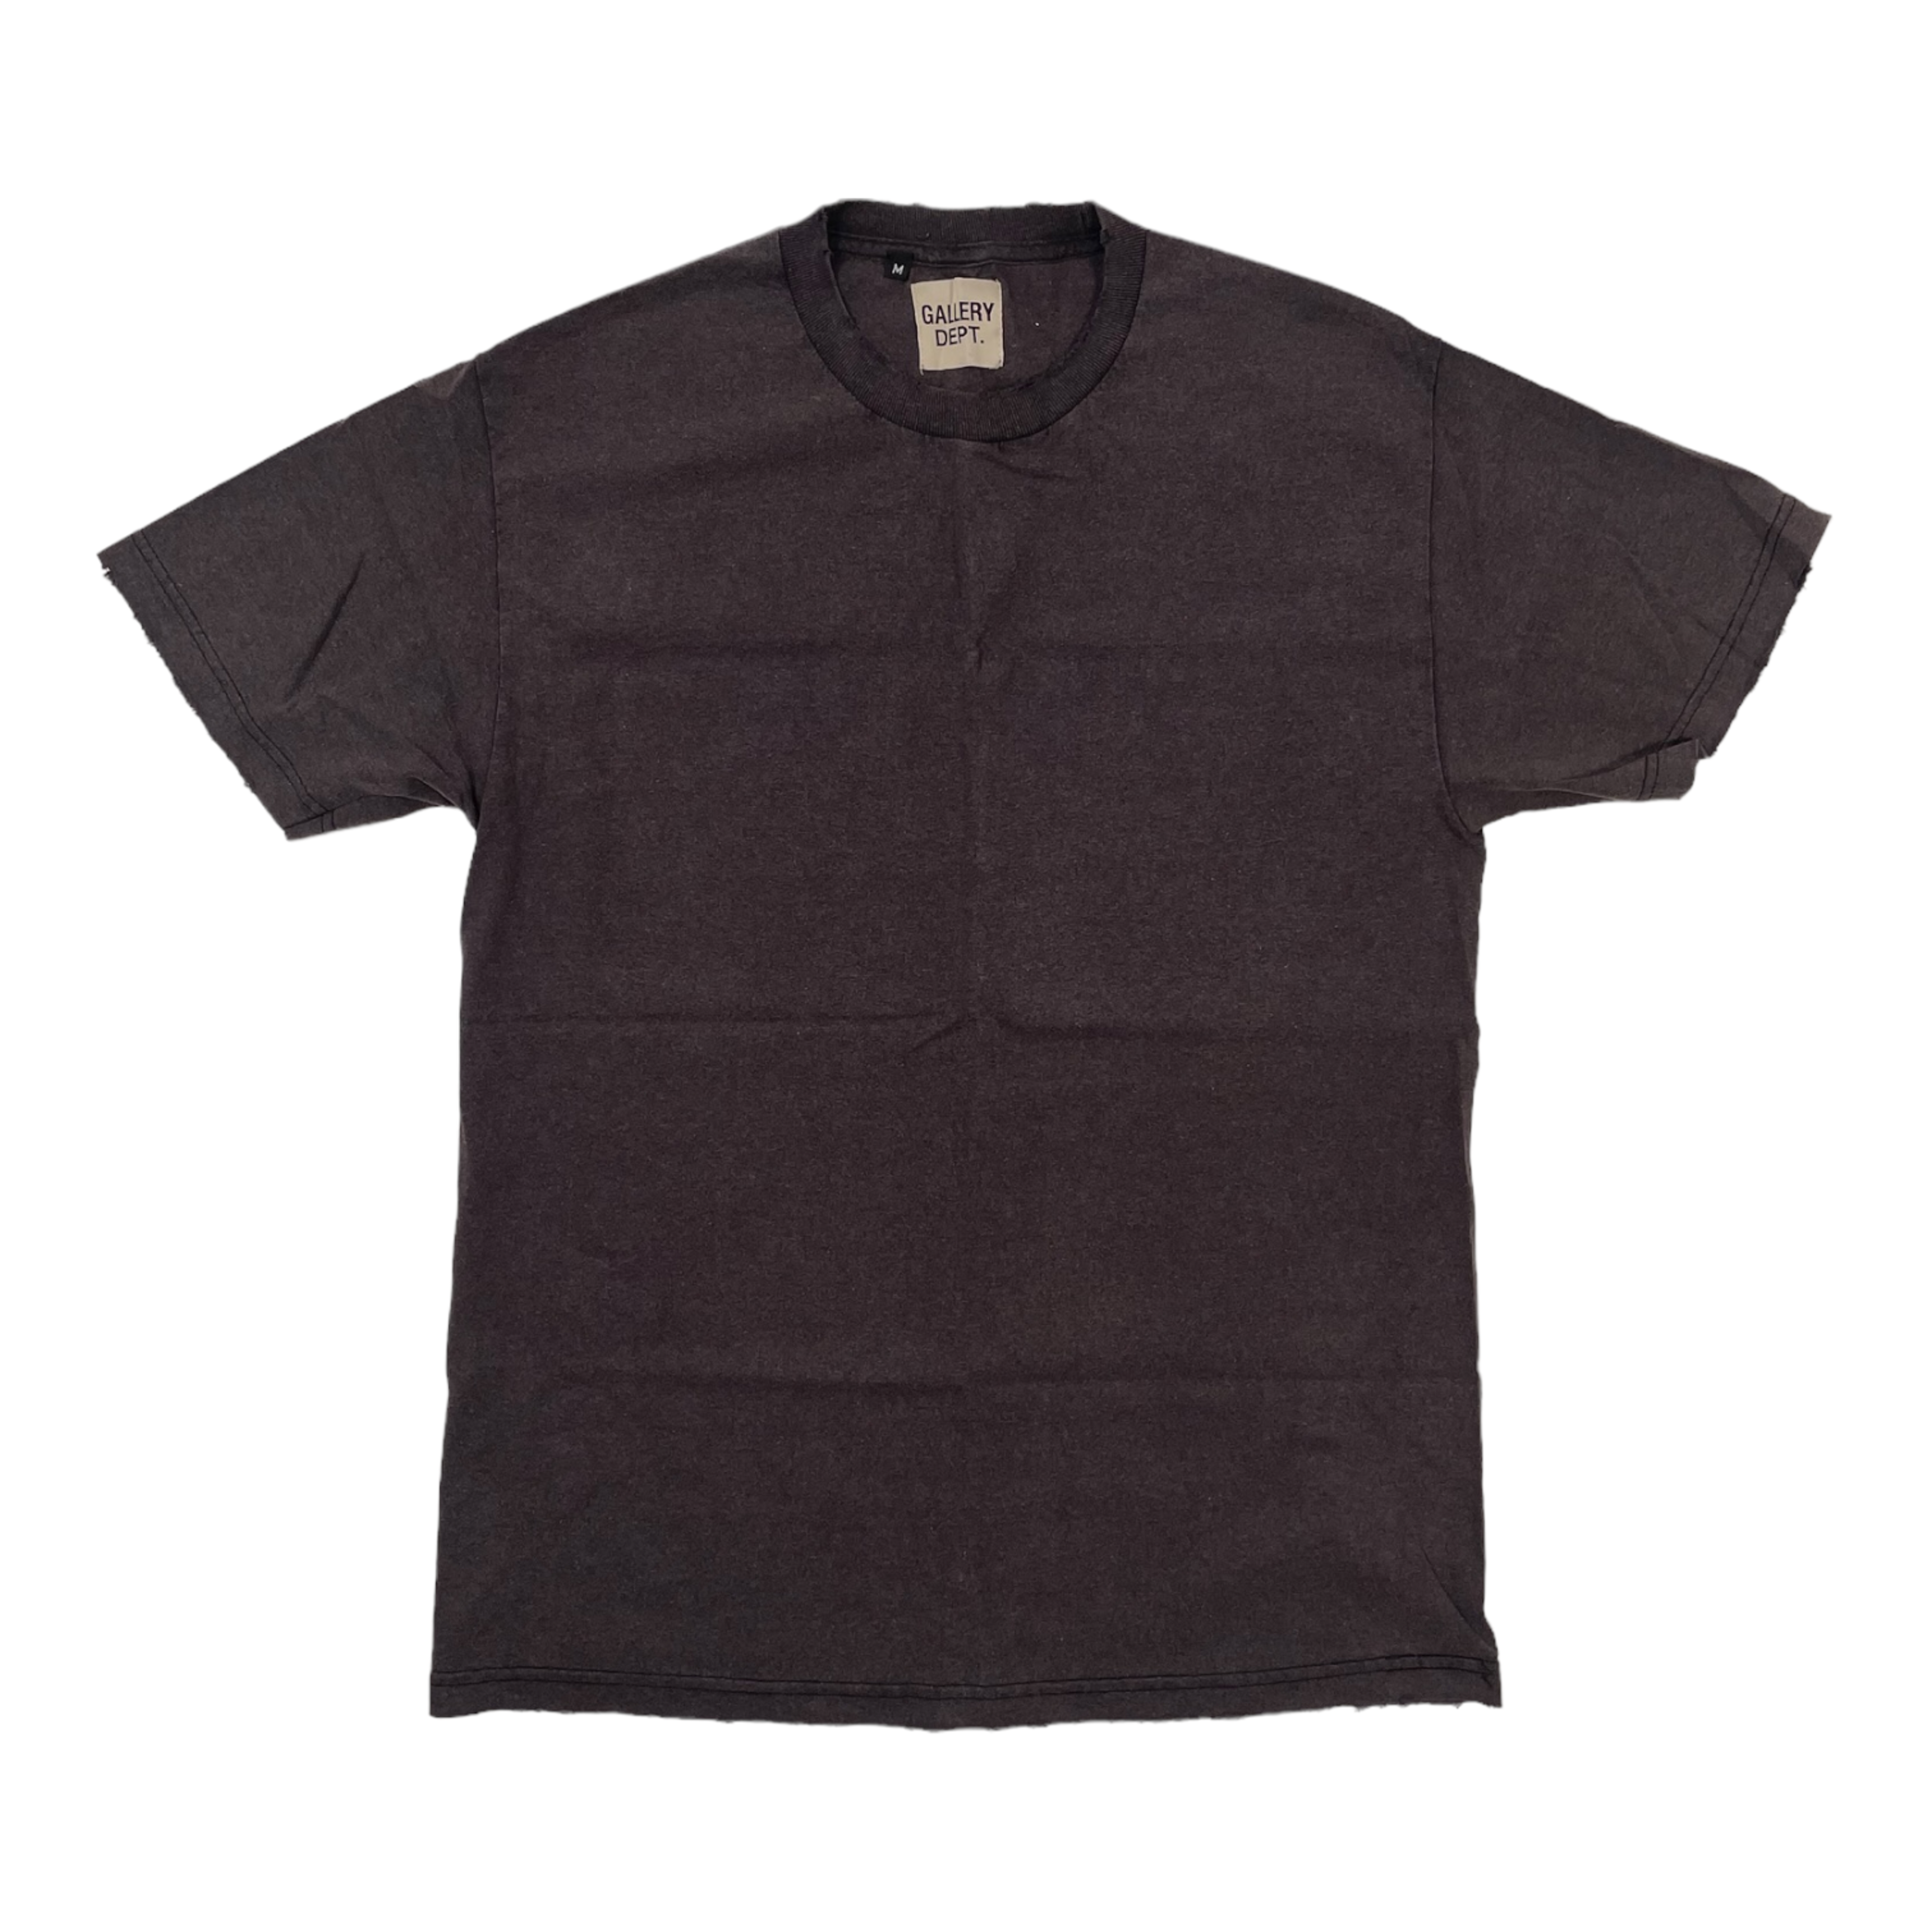 Gallery Department Blank Short Sleeve Tee Shirt Black Pre-Owned